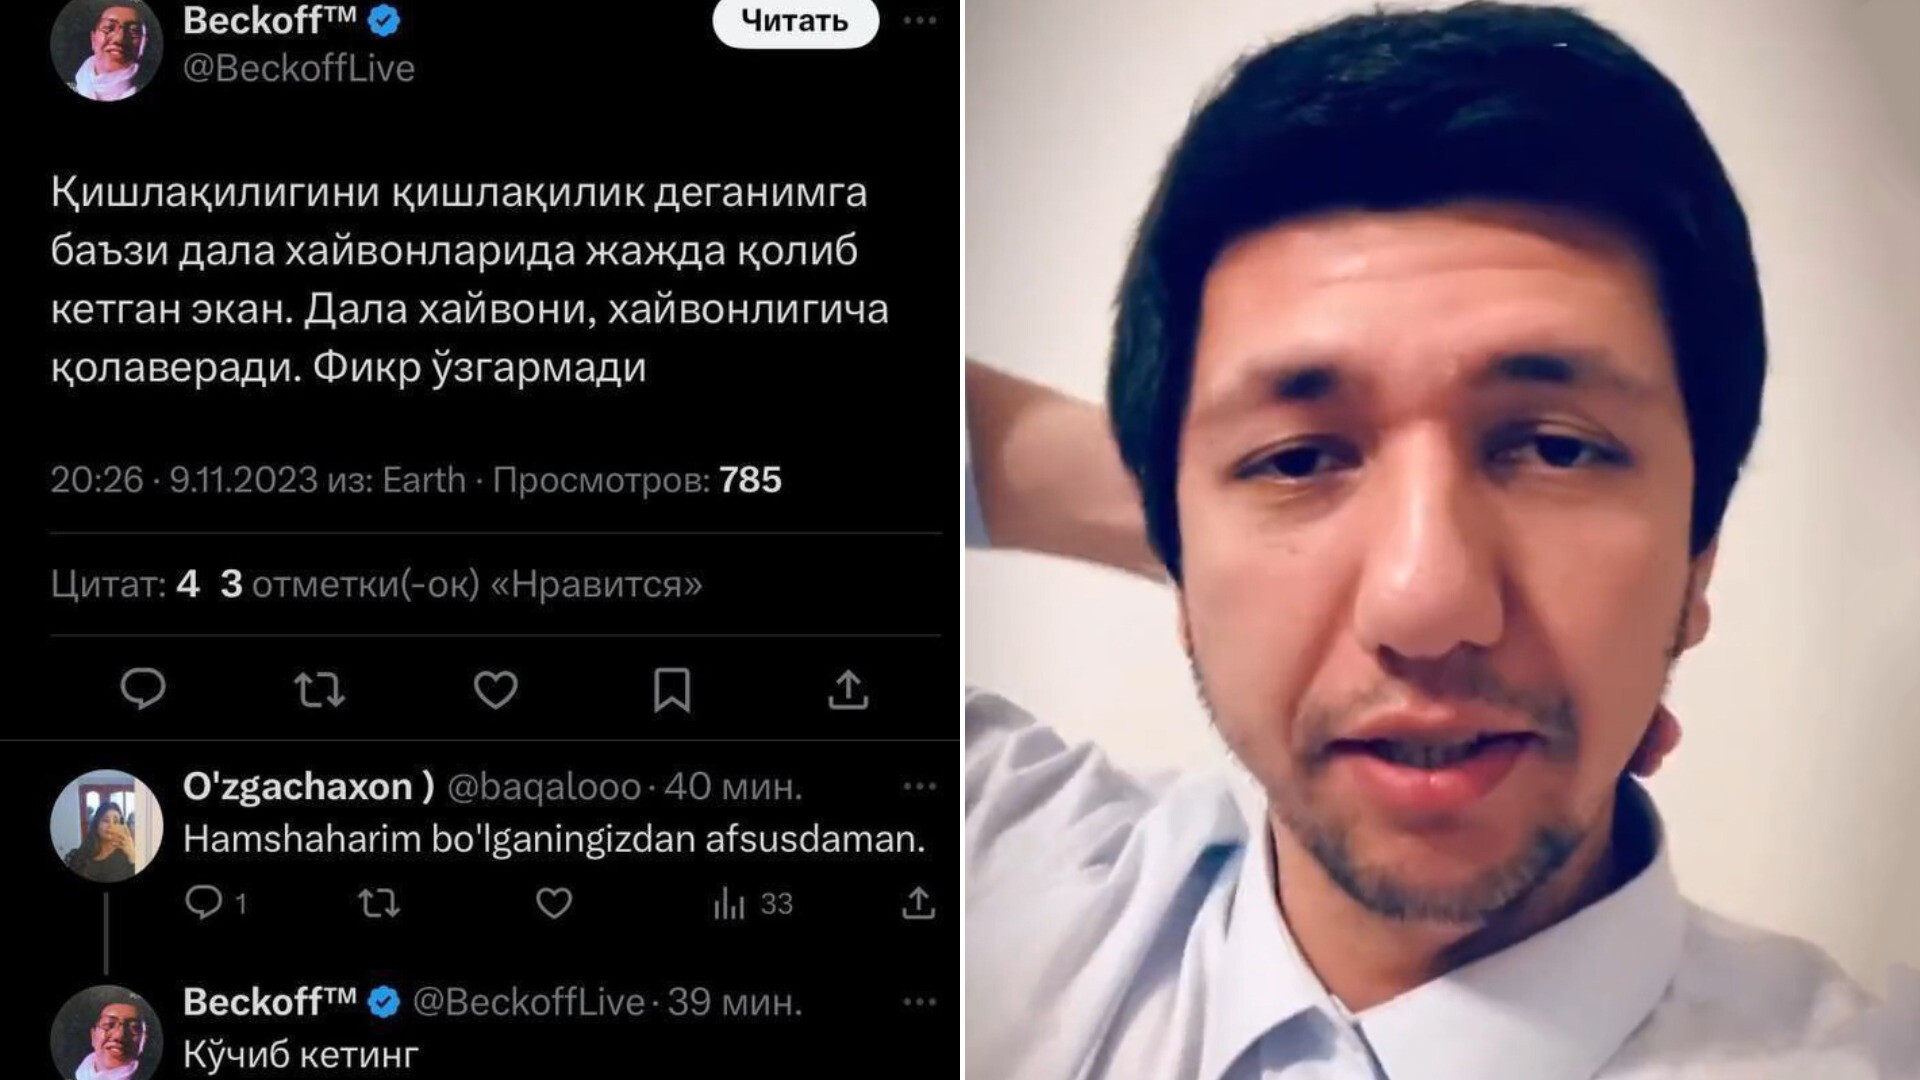 Блогер из Ташкента, оскорблявший блогеров из регионов, получил штраф — видео